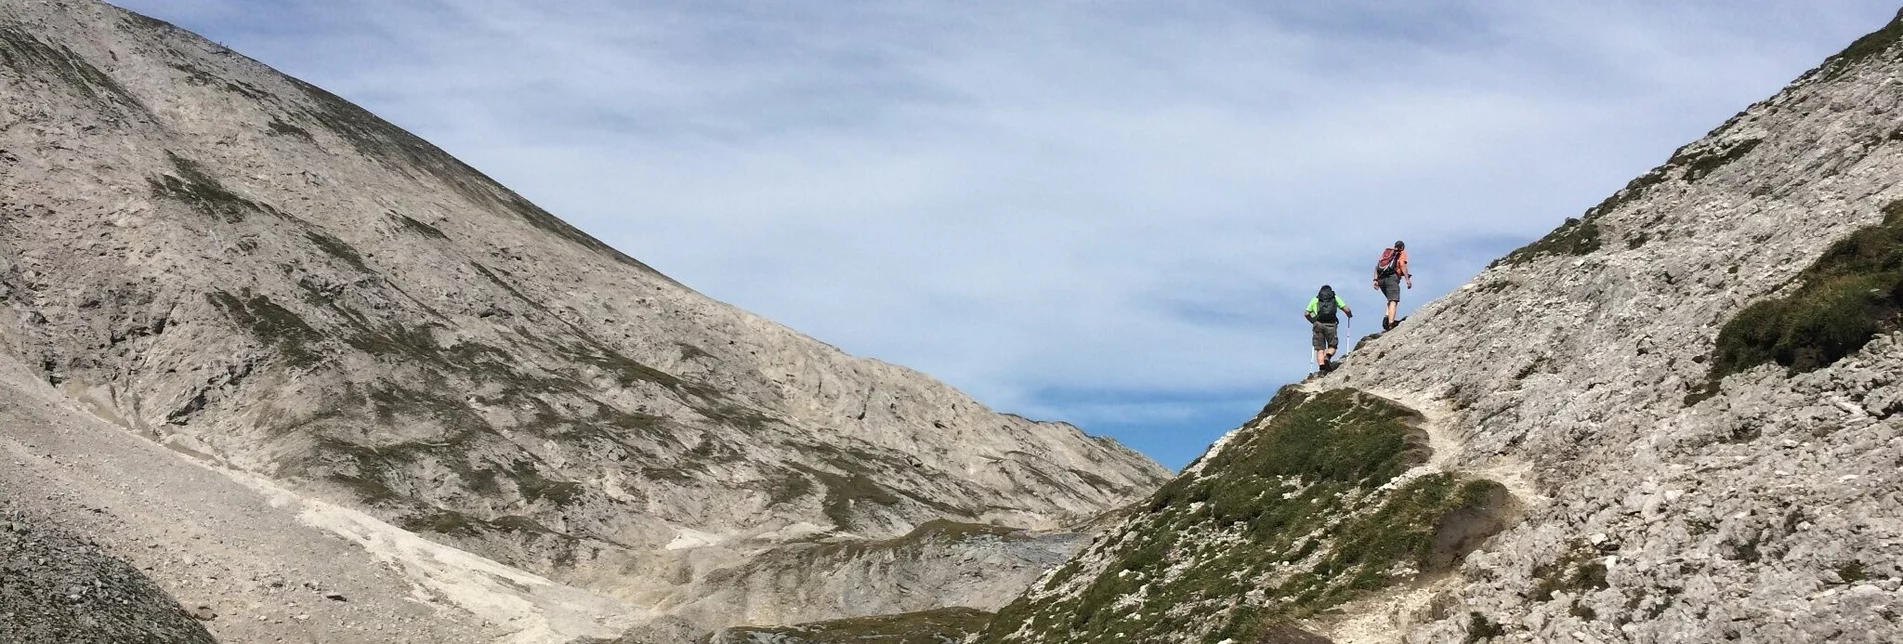 Bergtour Rund um die steirische Kalkspitze - Touren-Impression #1 | © Tourismusverband Schladming - Katrin Hutegger